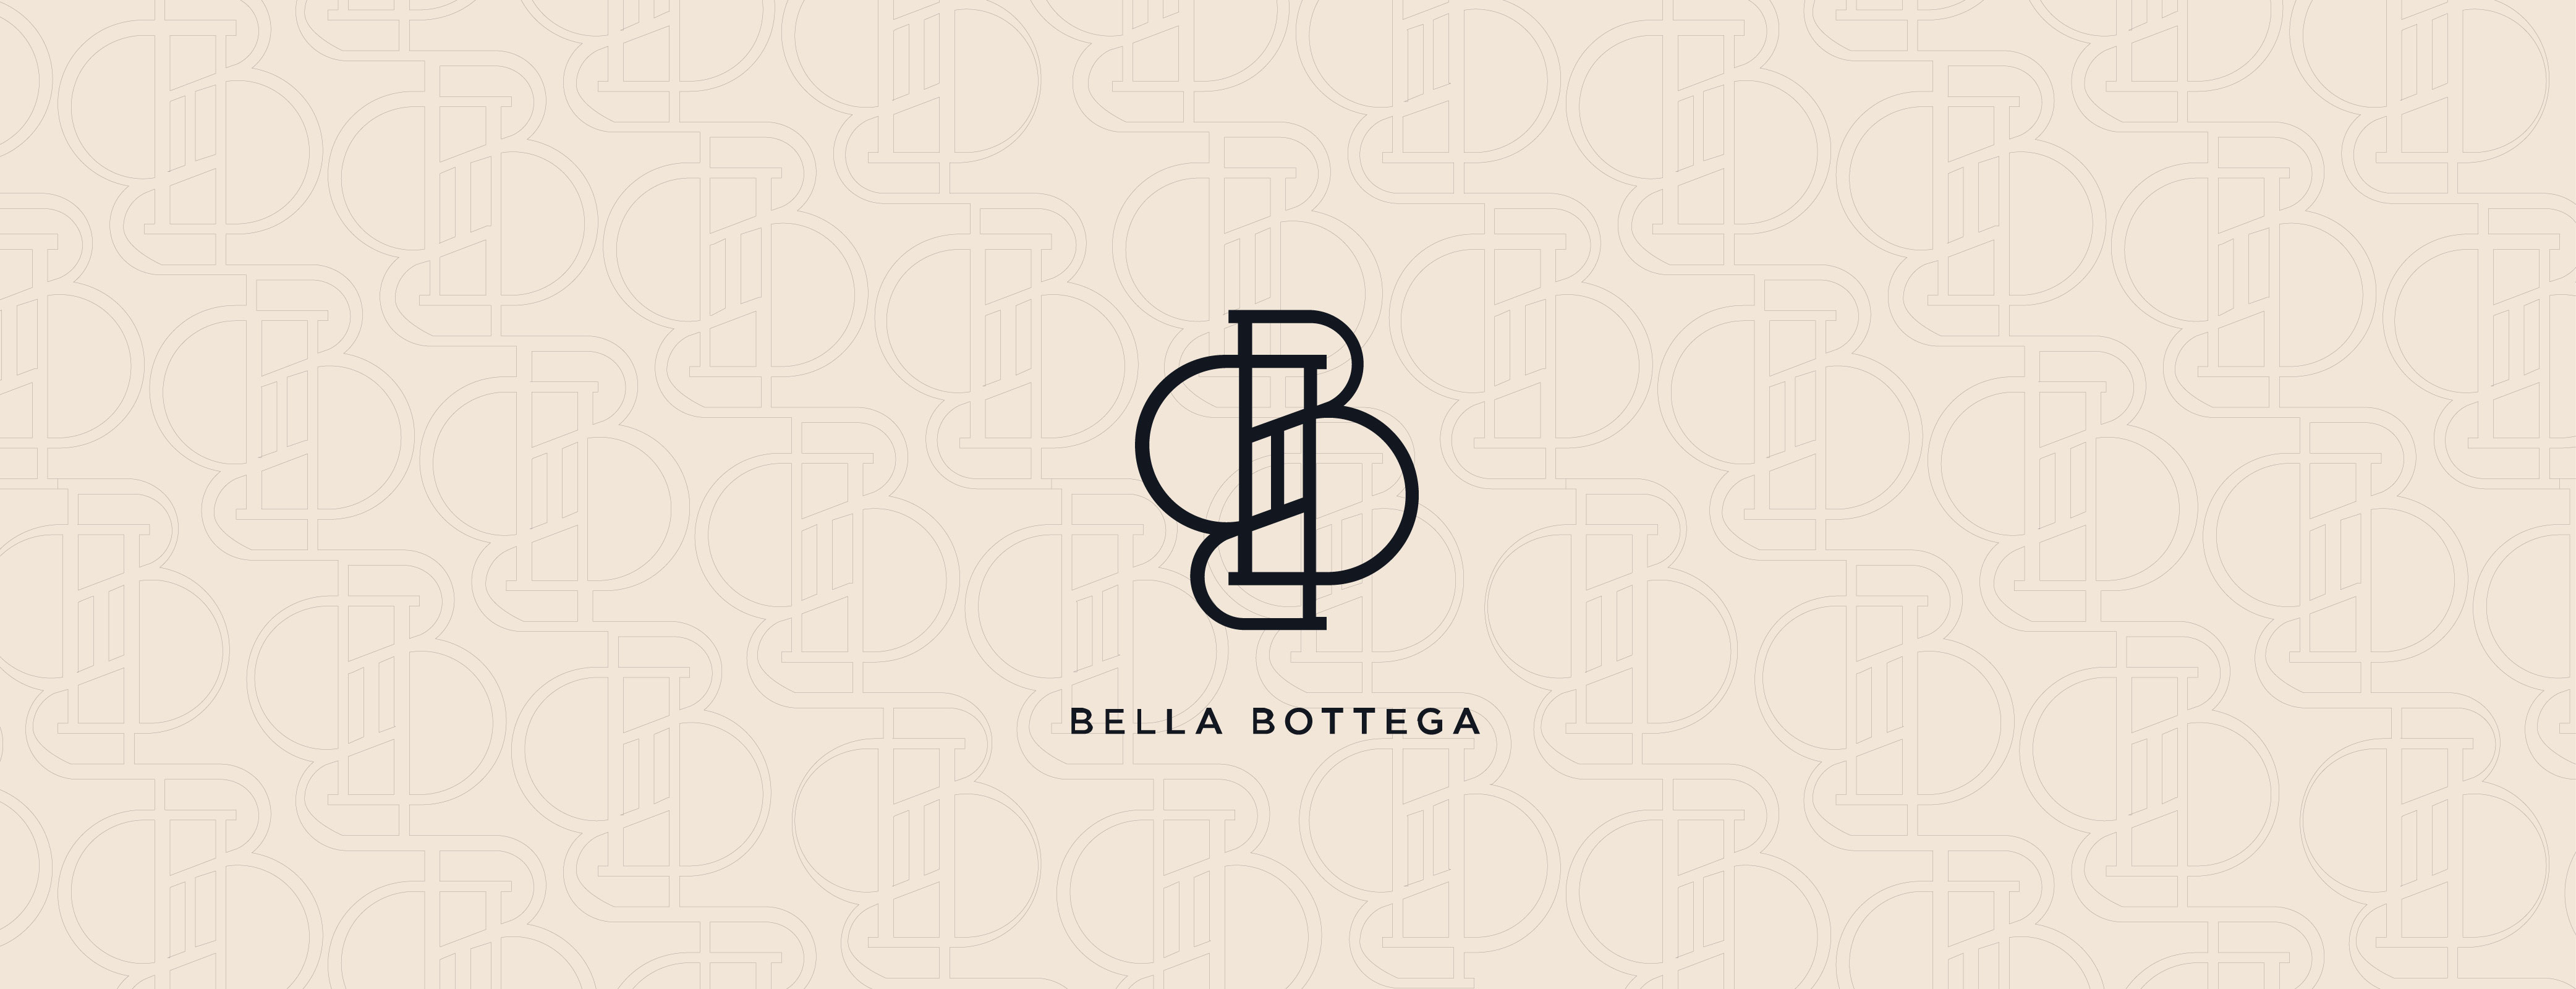 Bella Bottega graphic